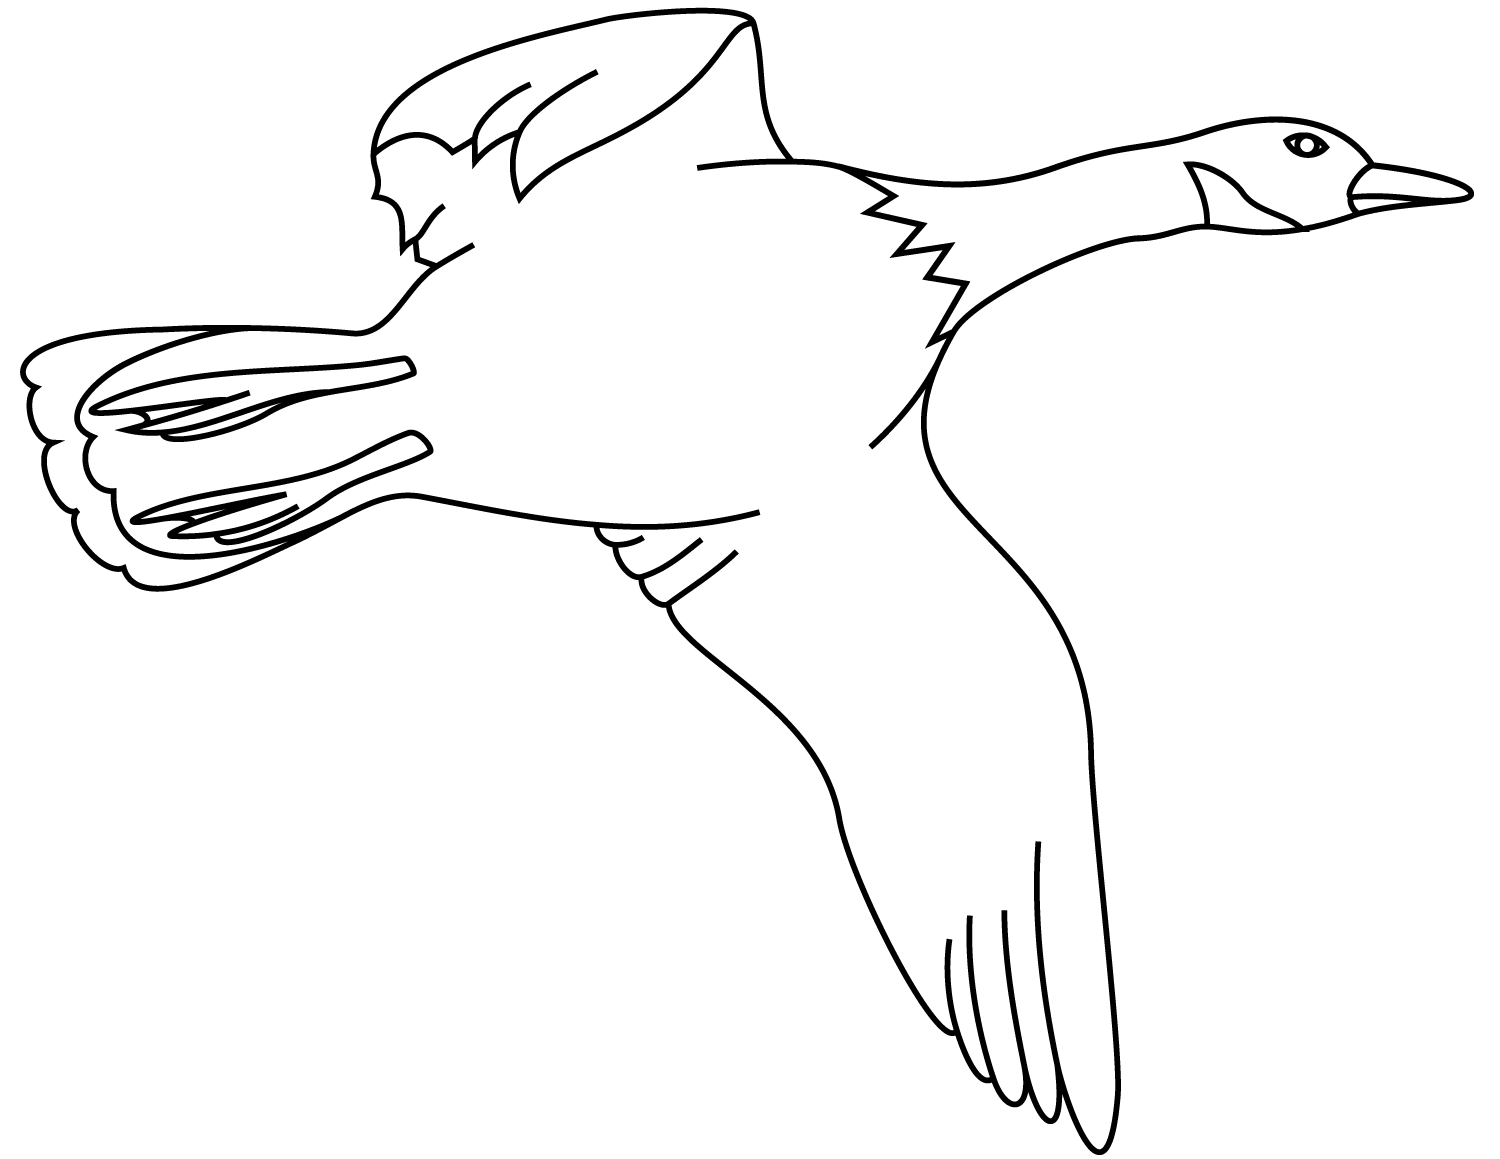 Летающей утке кряквы нужны большие крылья для быстрого взлета с утки